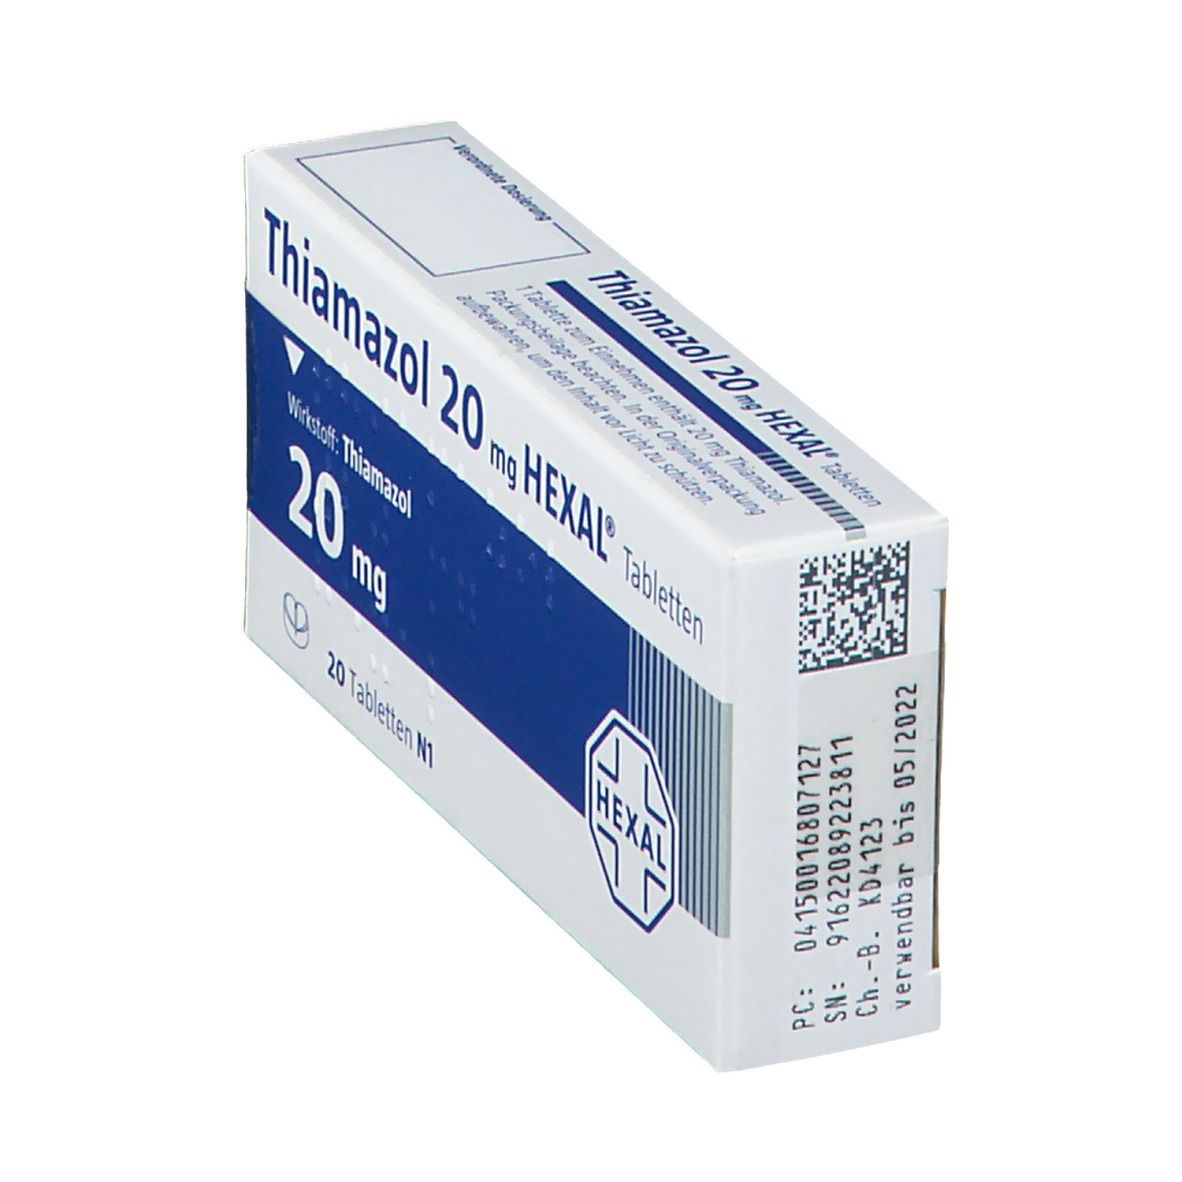 Thiamazol 20 mg HEXAL®